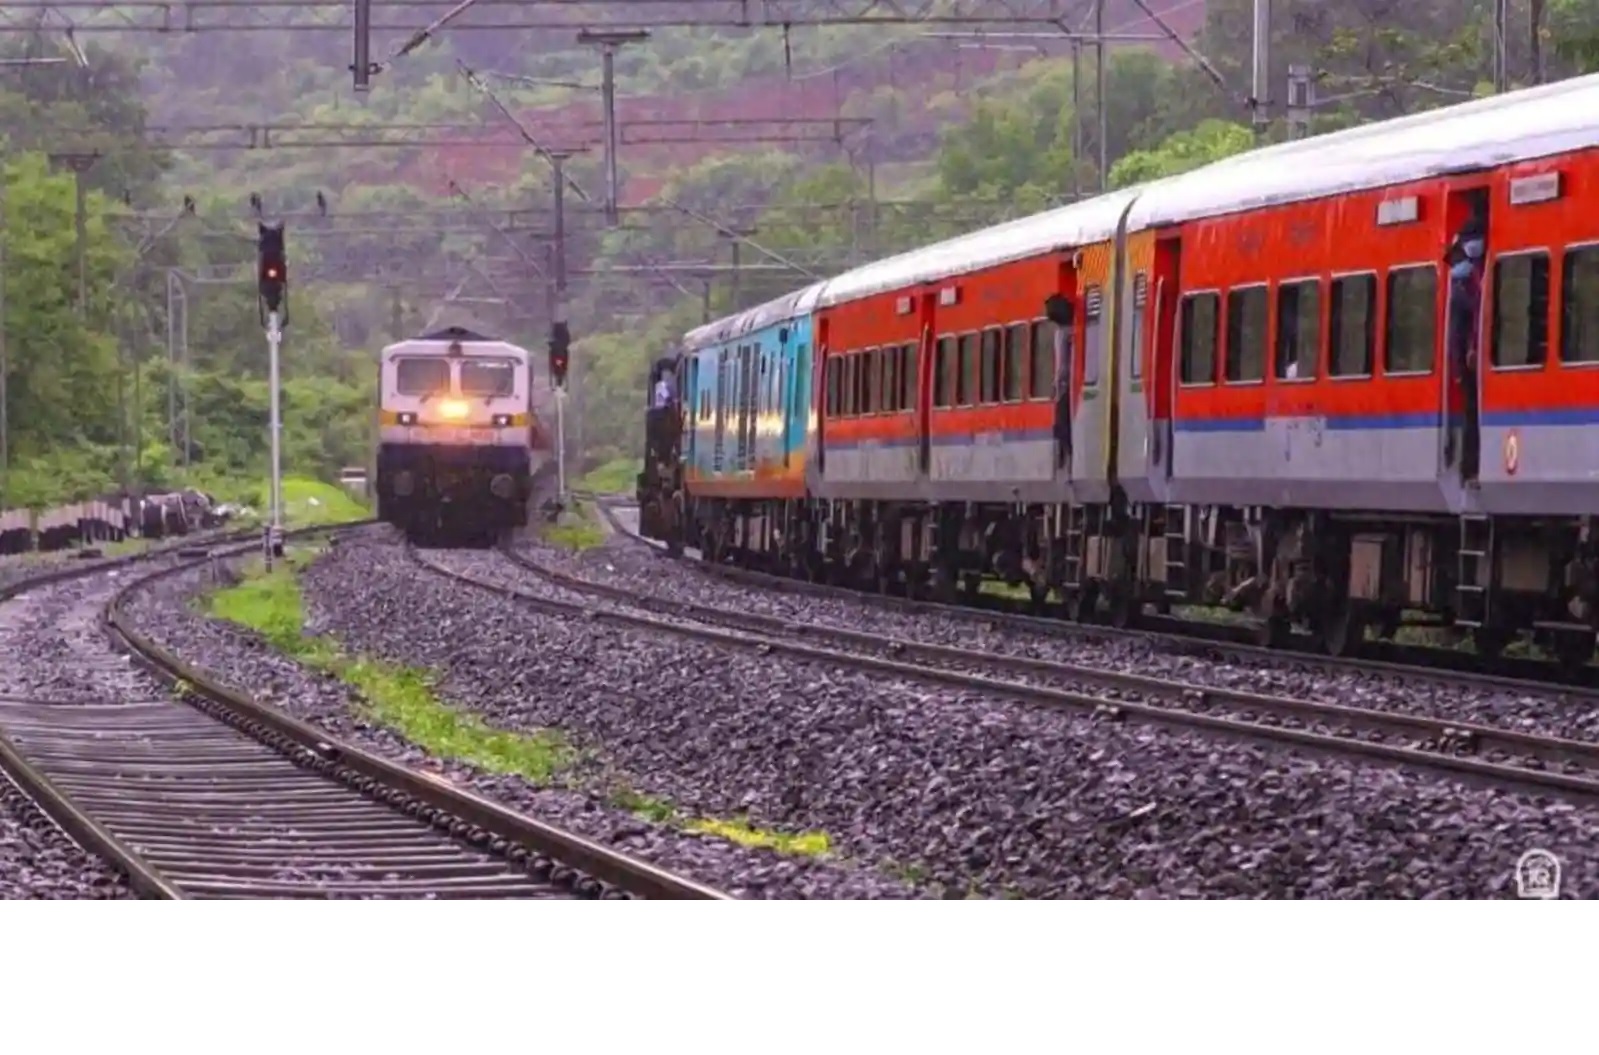 Indian Railway : एक ट्रैक पर चलती हैं कई ट्रेनें, मगर फिक्स्ड दूरी के साथ, इस तरह जान पाते हैं लोको पायलट-Indian Railway: Many trains run on one track, but with fixed distance, this is how loco pilots get to know